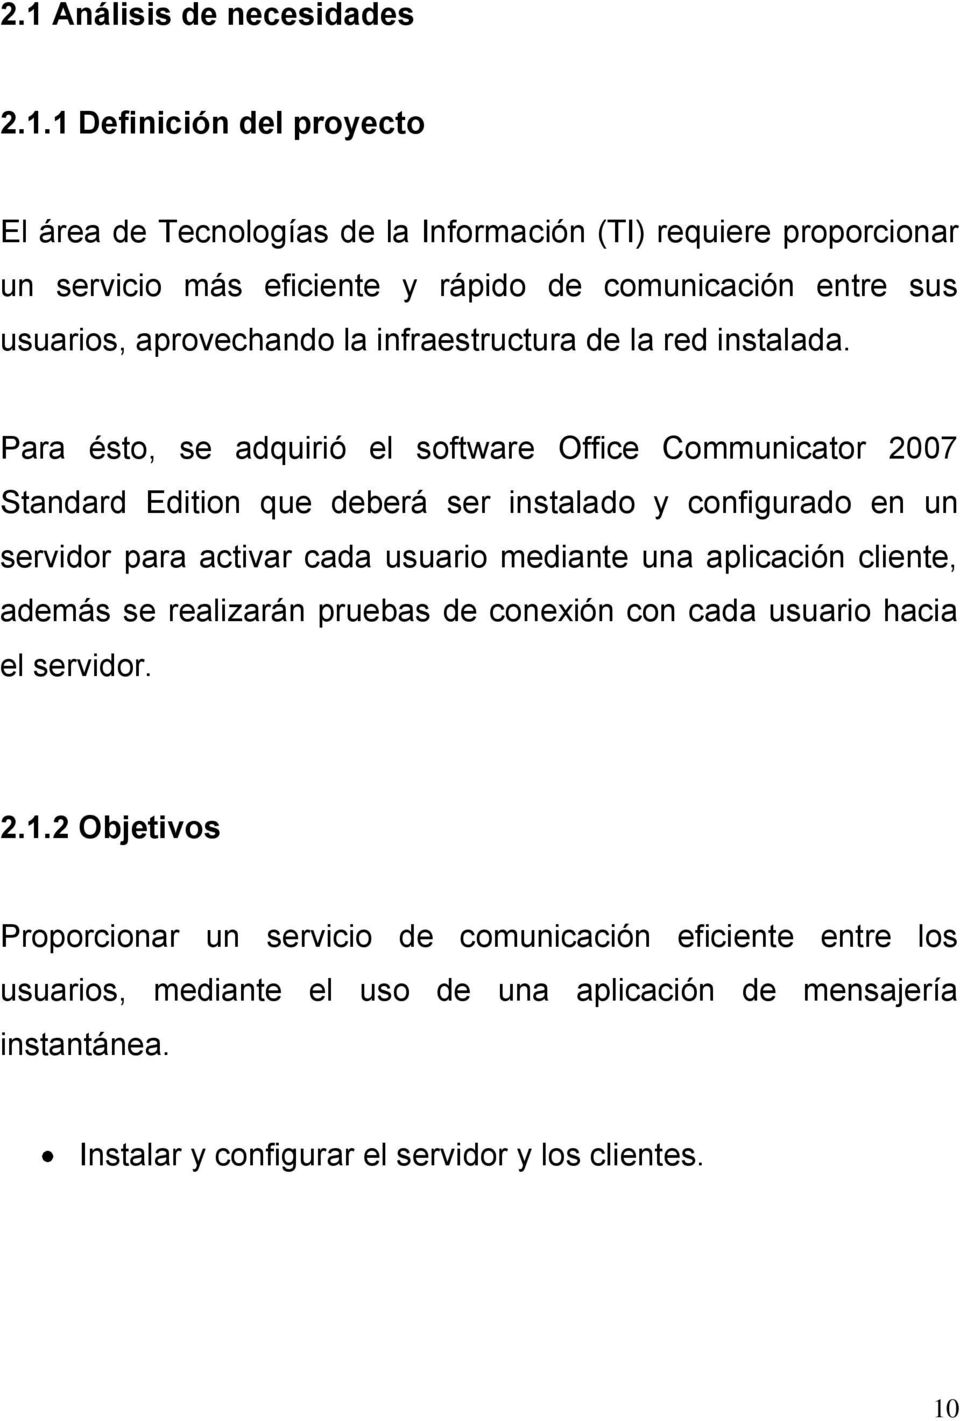 Para ésto, se adquirió el software Office Communicator 2007 Standard Edition que deberá ser instalado y configurado en un servidor para activar cada usuario mediante una